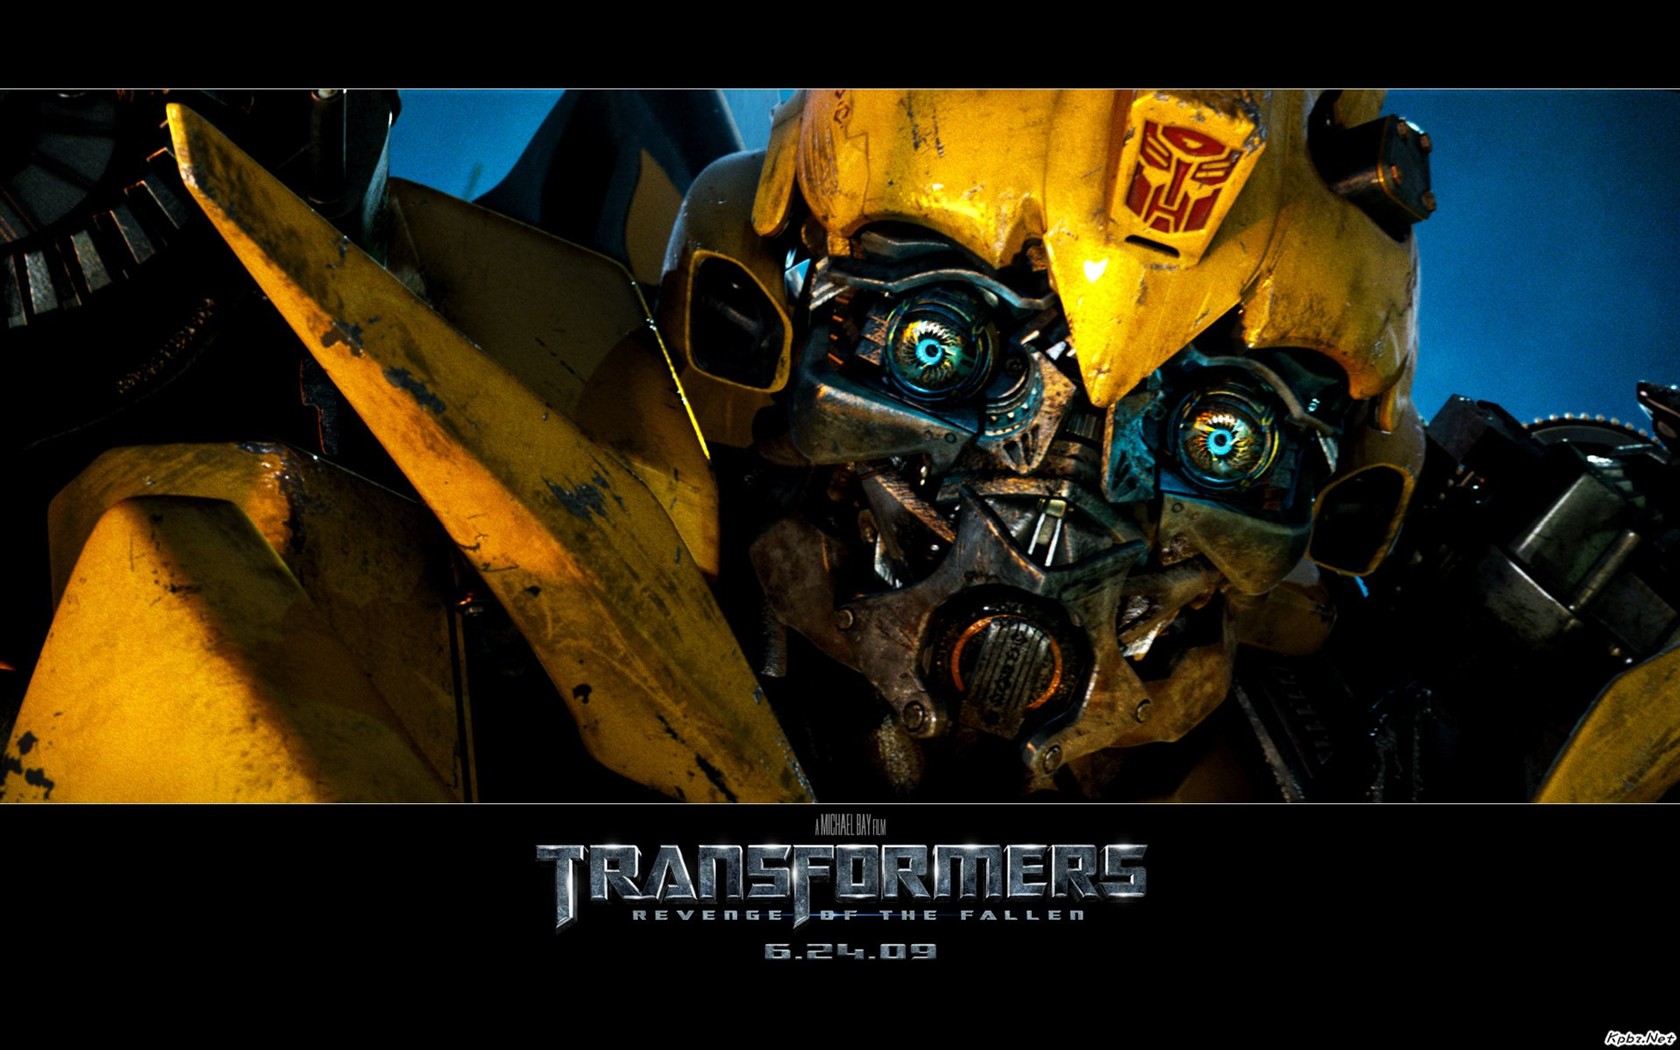 Transformers HD papel tapiz #7 - 1680x1050